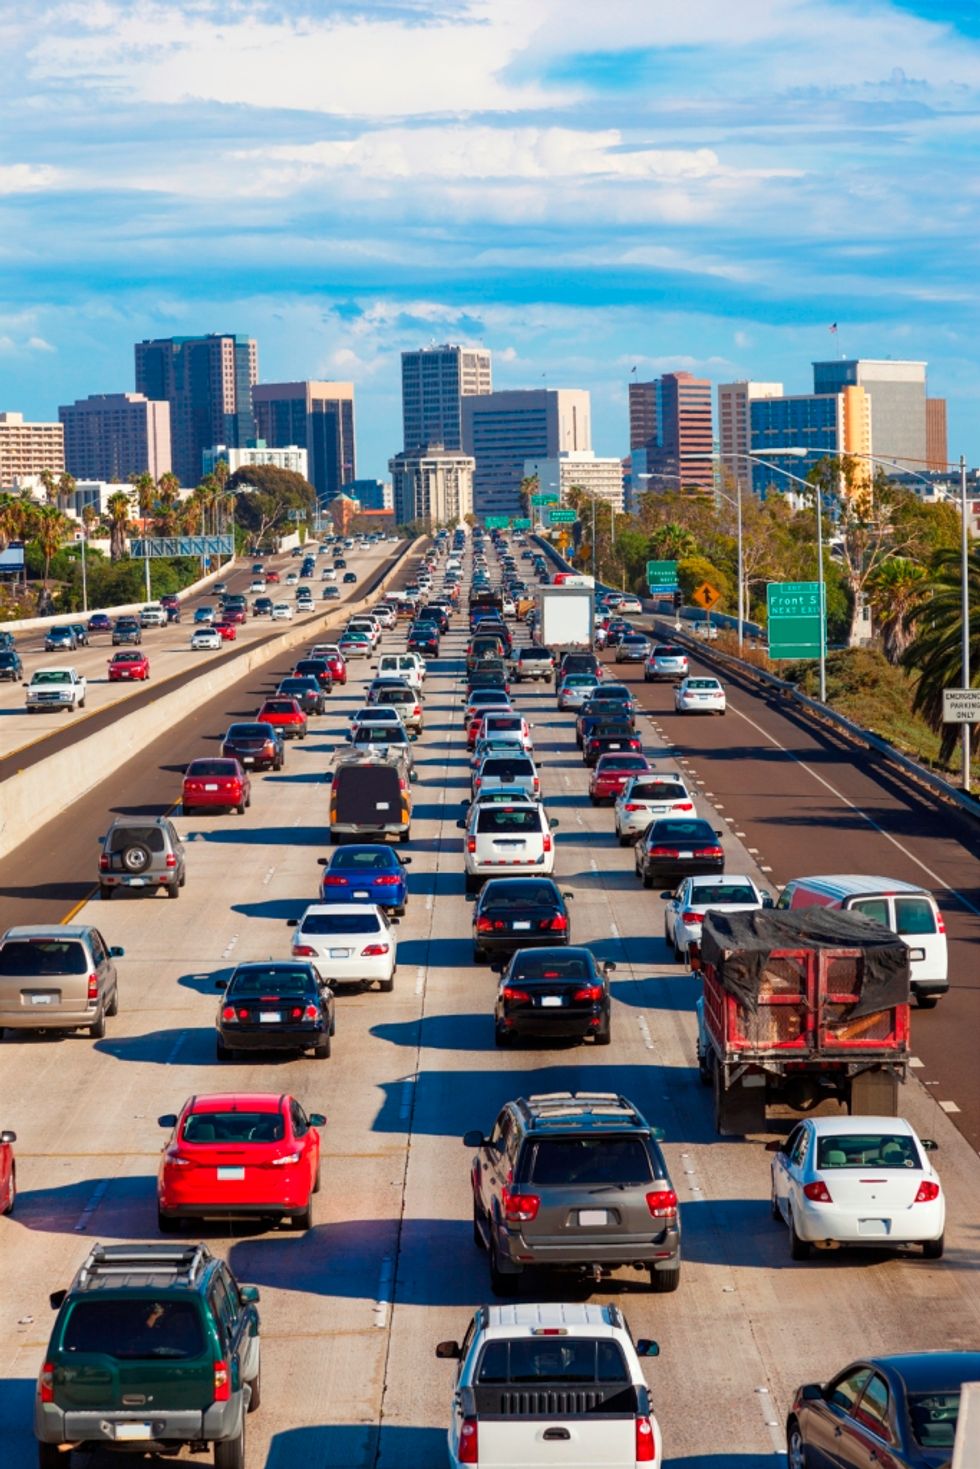 
Ten Ways Transportation Management Drives Competitive Advantage
